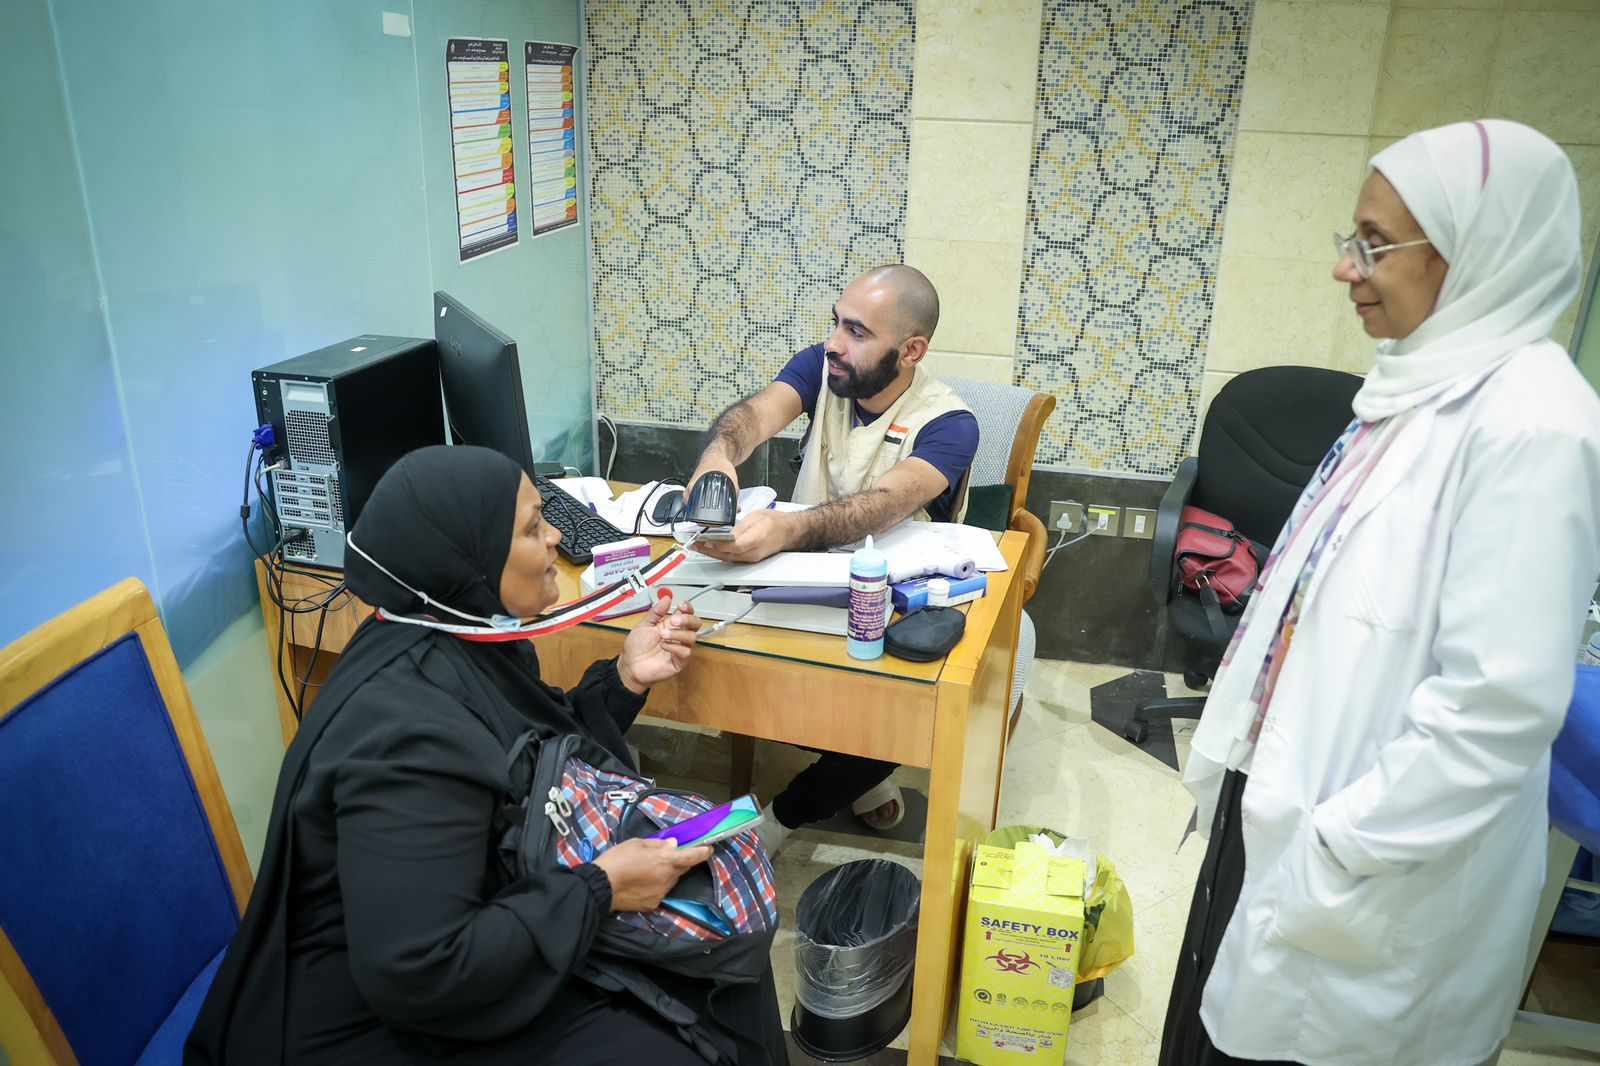 الصحة: تقديم خدمات الكشف والعلاج لـ18 ألف و726 حاجا مصريا من خلال عيادات بعثة الحج الطبية في مكة والمدينة